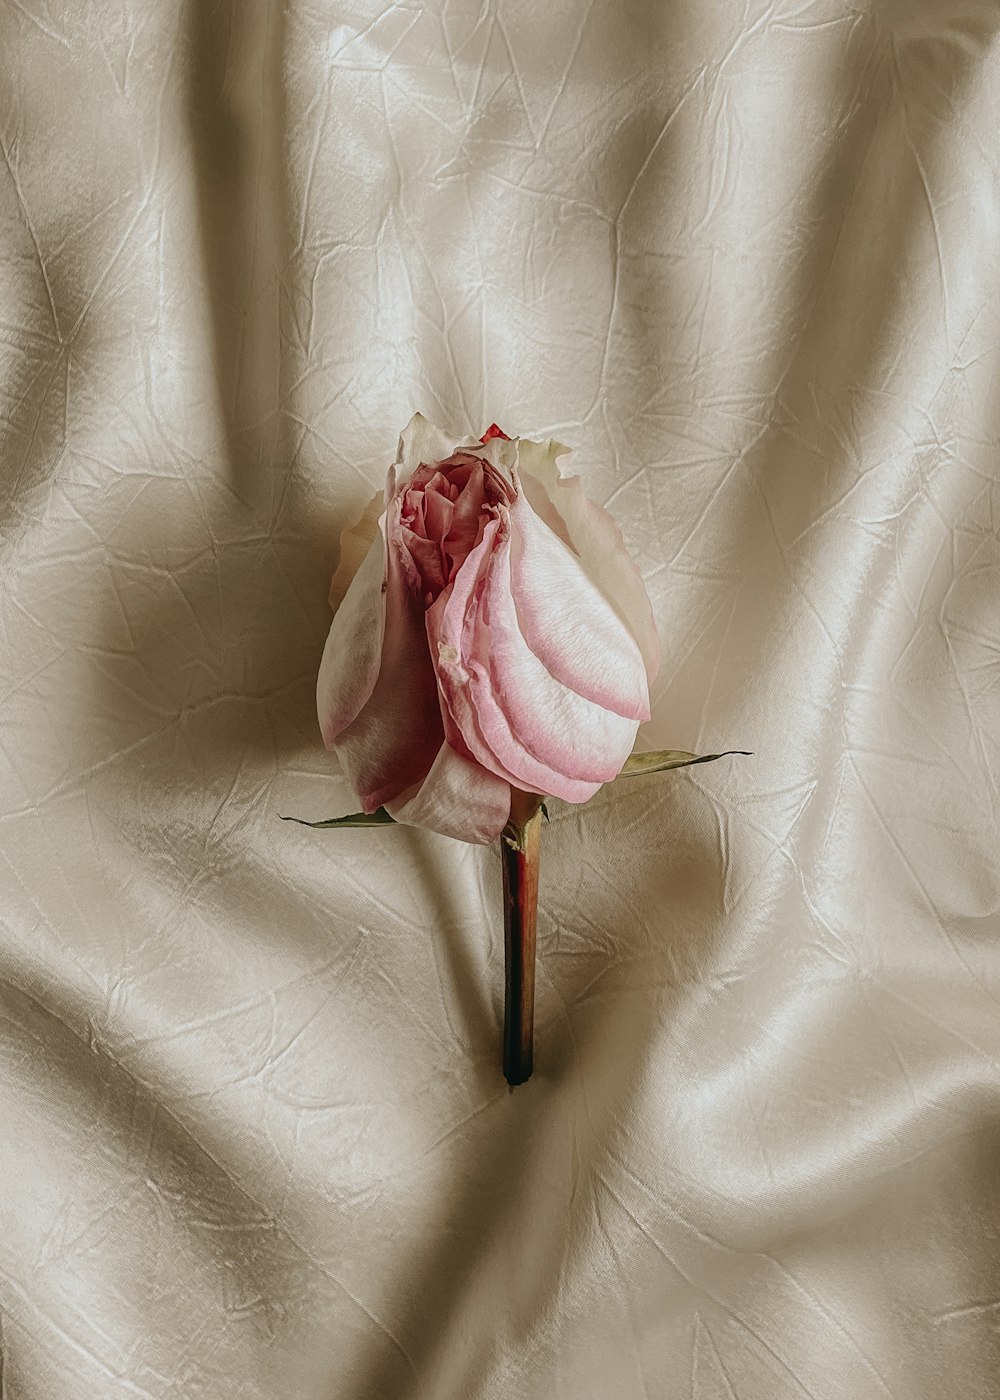 白い布に一輪のピンクの花